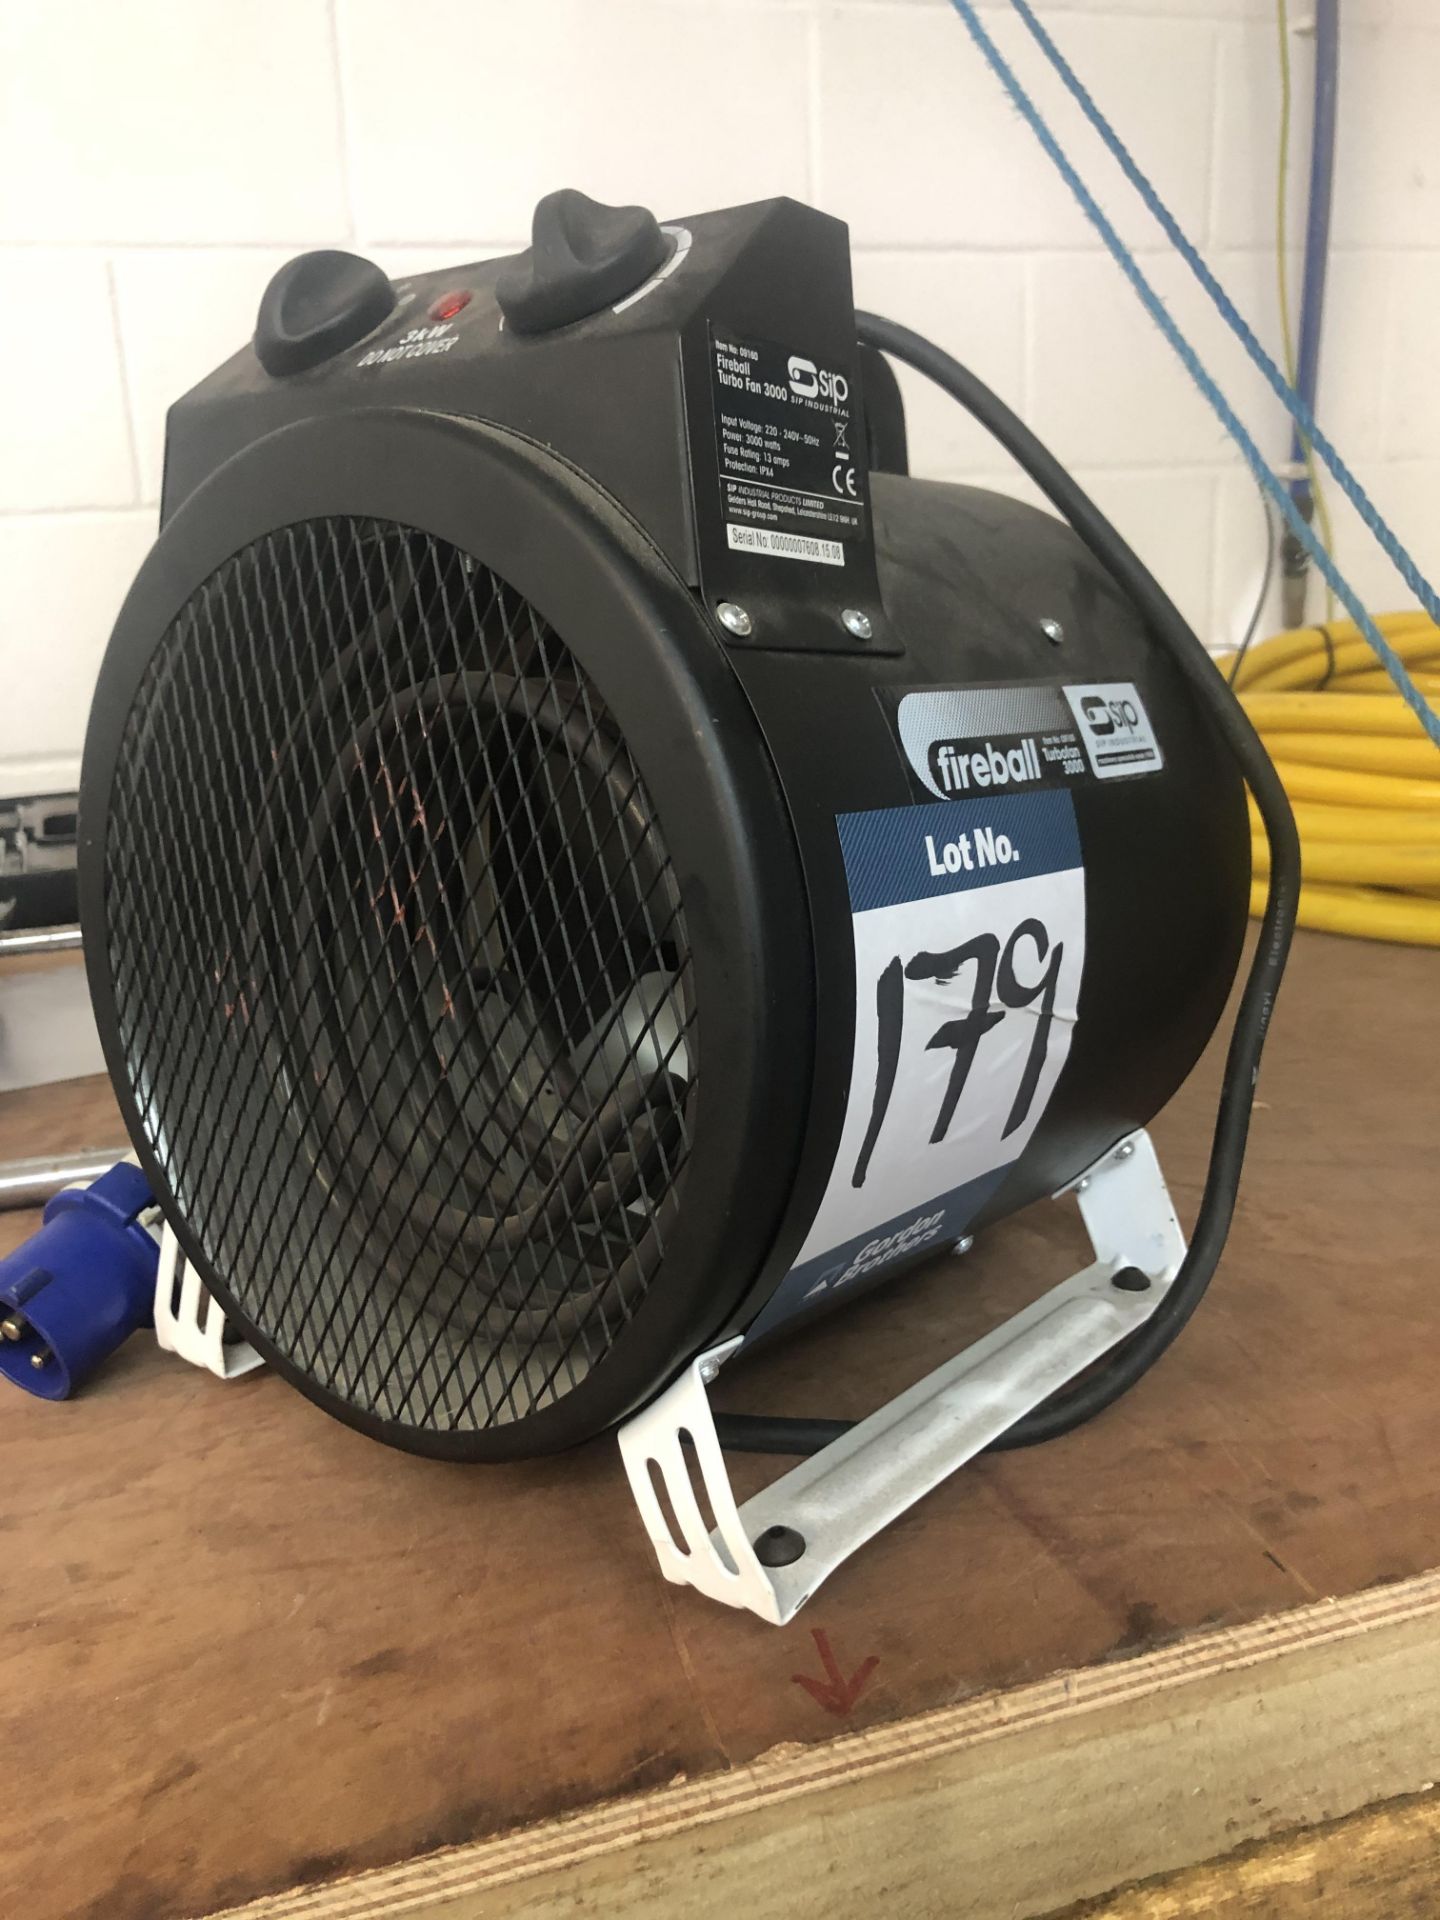 SIP, Type Fireball Turbofan 3000 fan heater